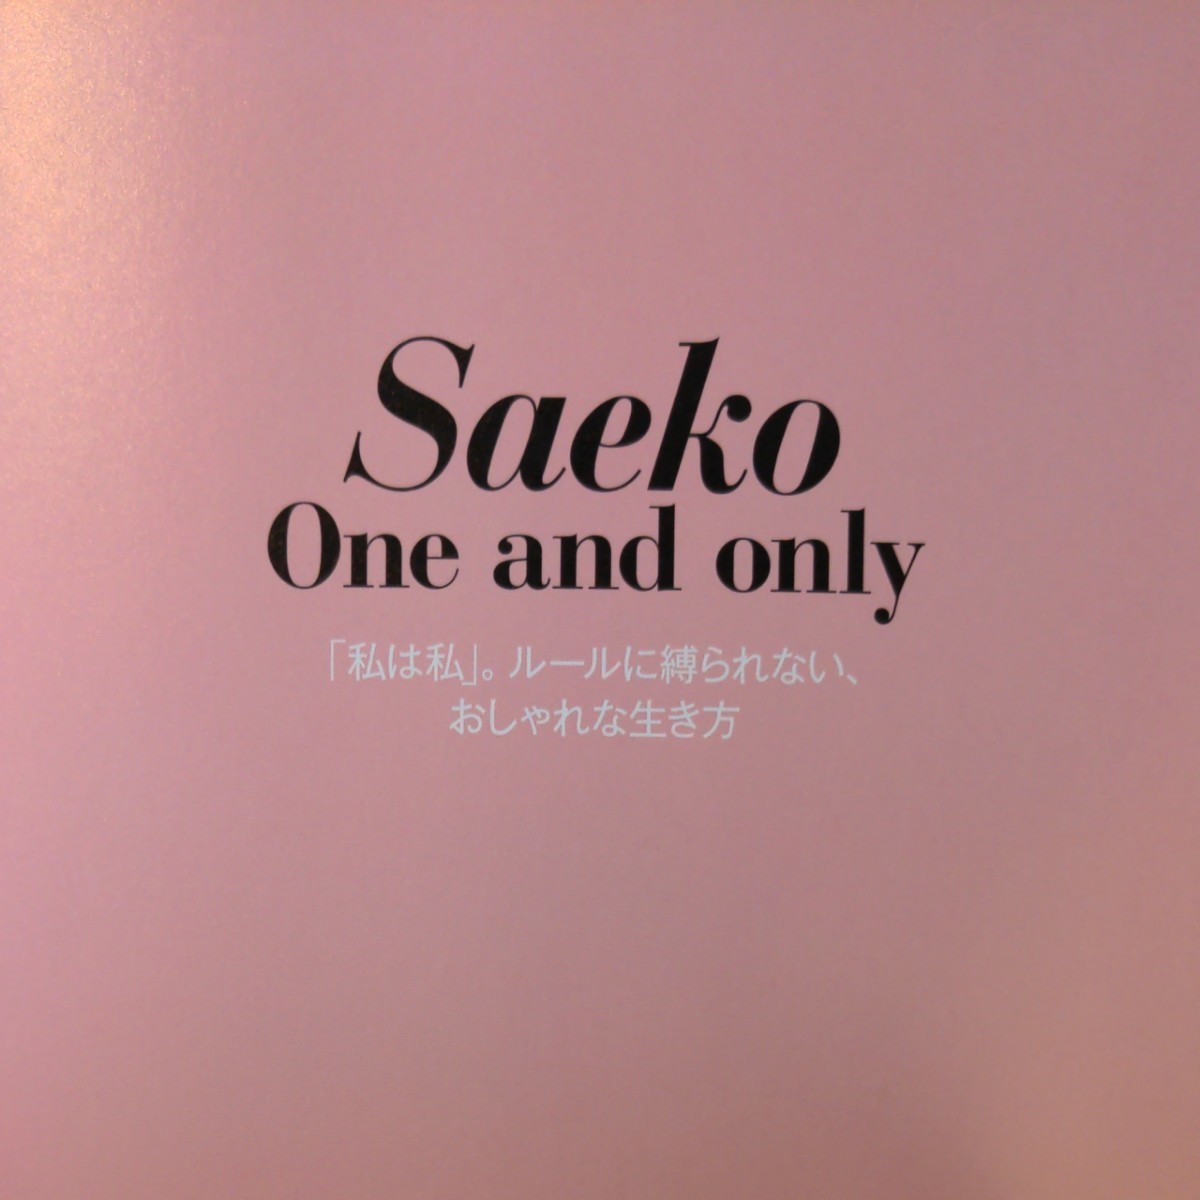 ※値下げ【写真集】Saeko  One and only 「私は私」。ルールに縛られない、おしゃれな生き方